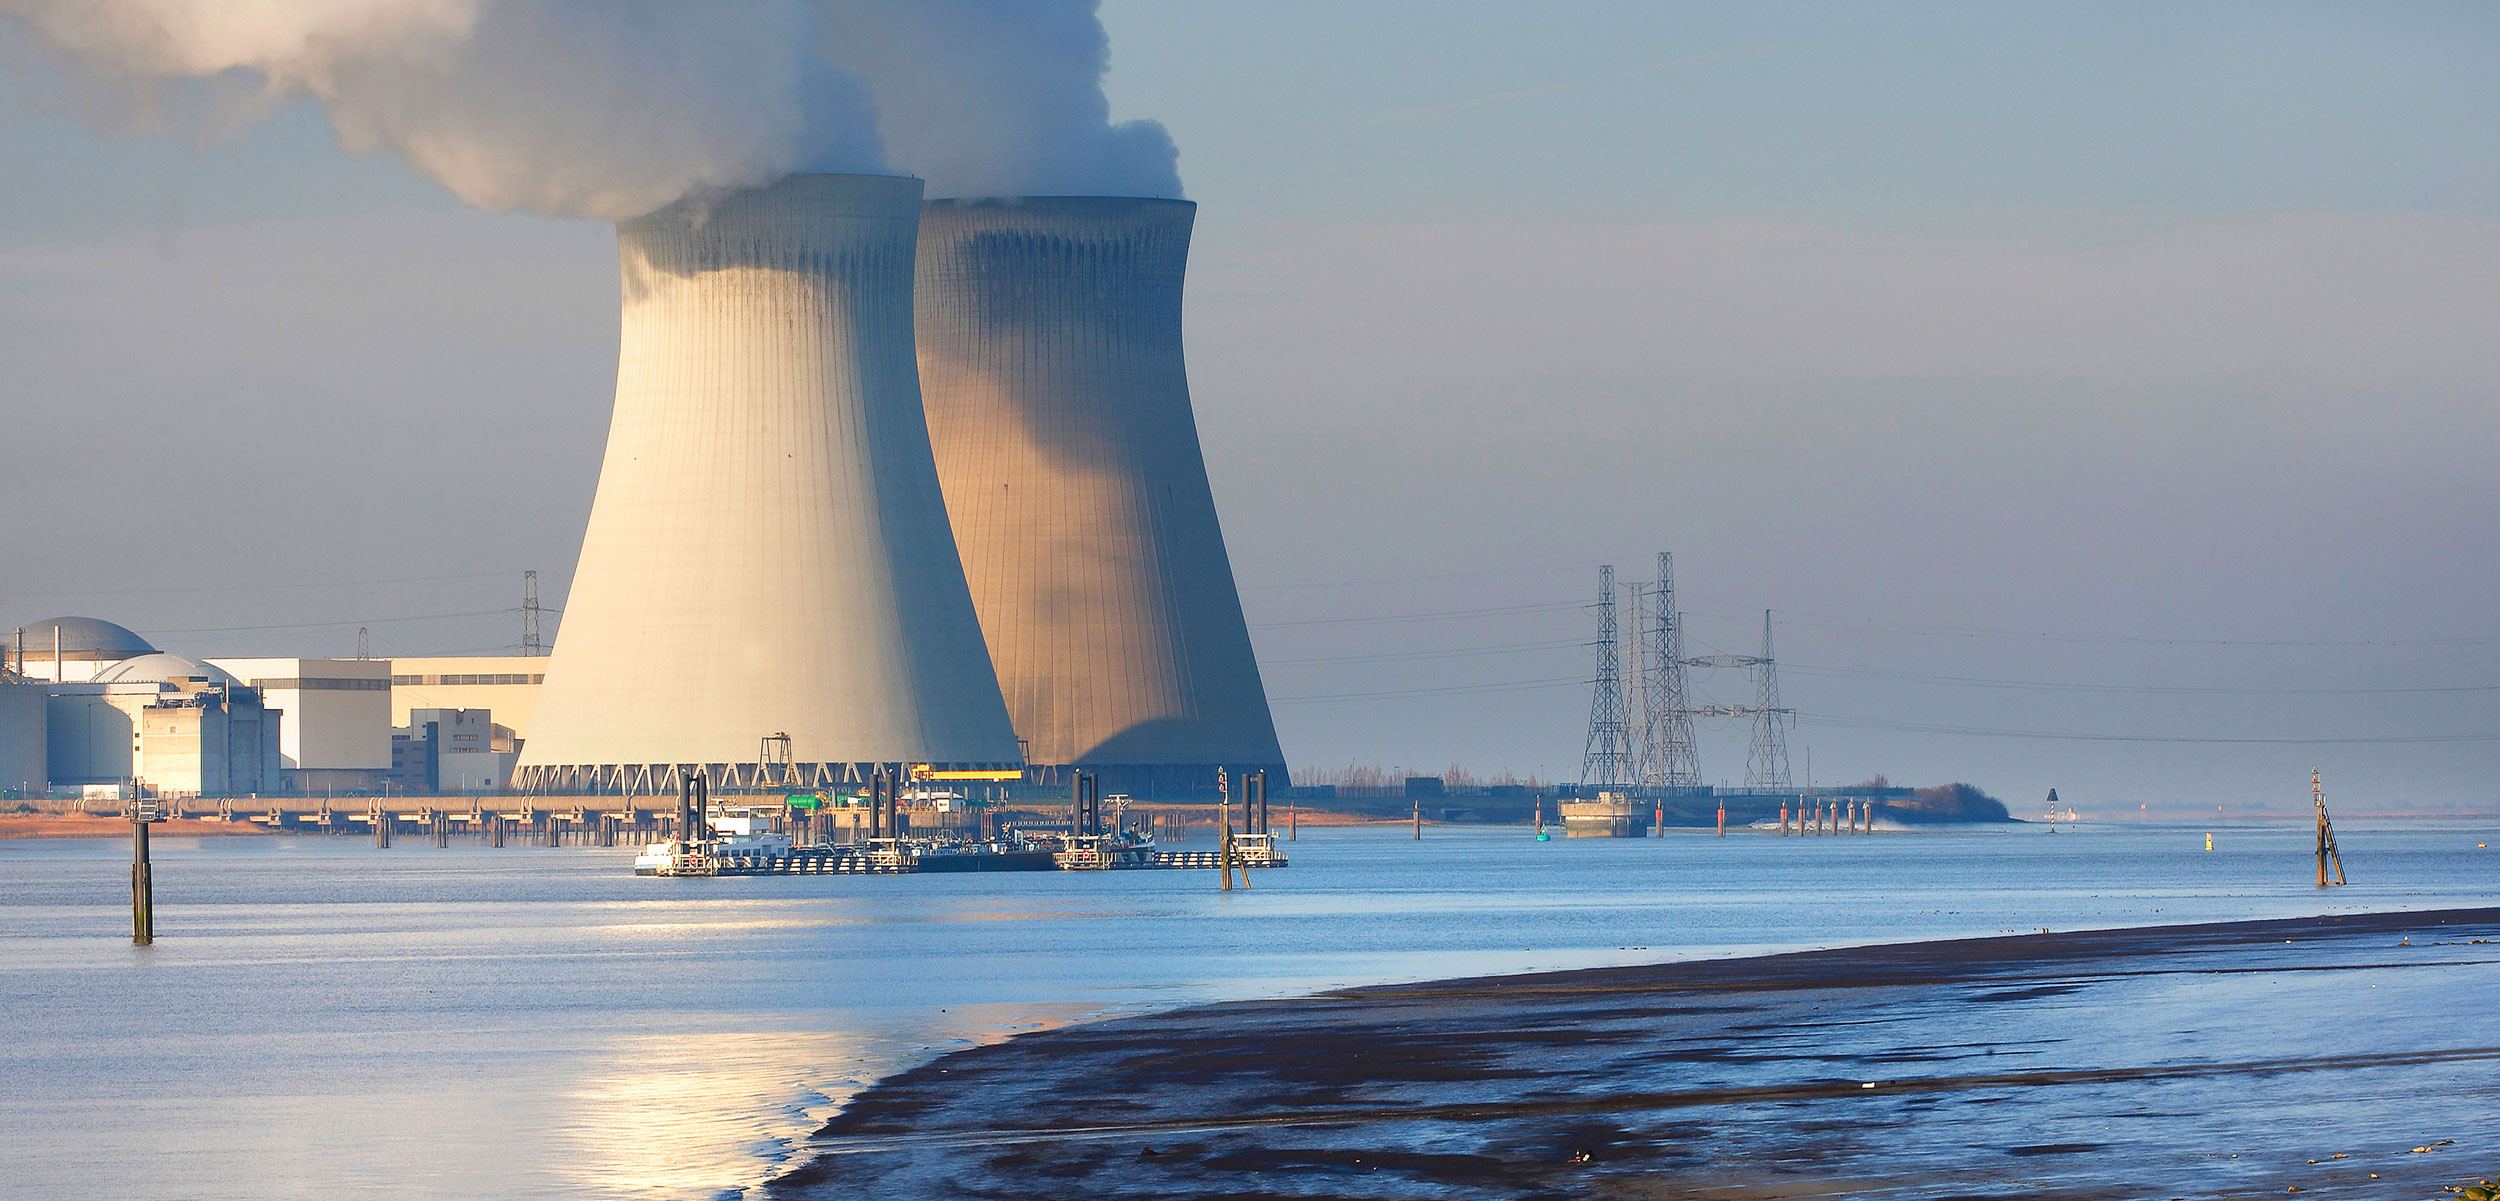 nuclear power plant at the coast, Belgium, Galgeschoor, Antwerp